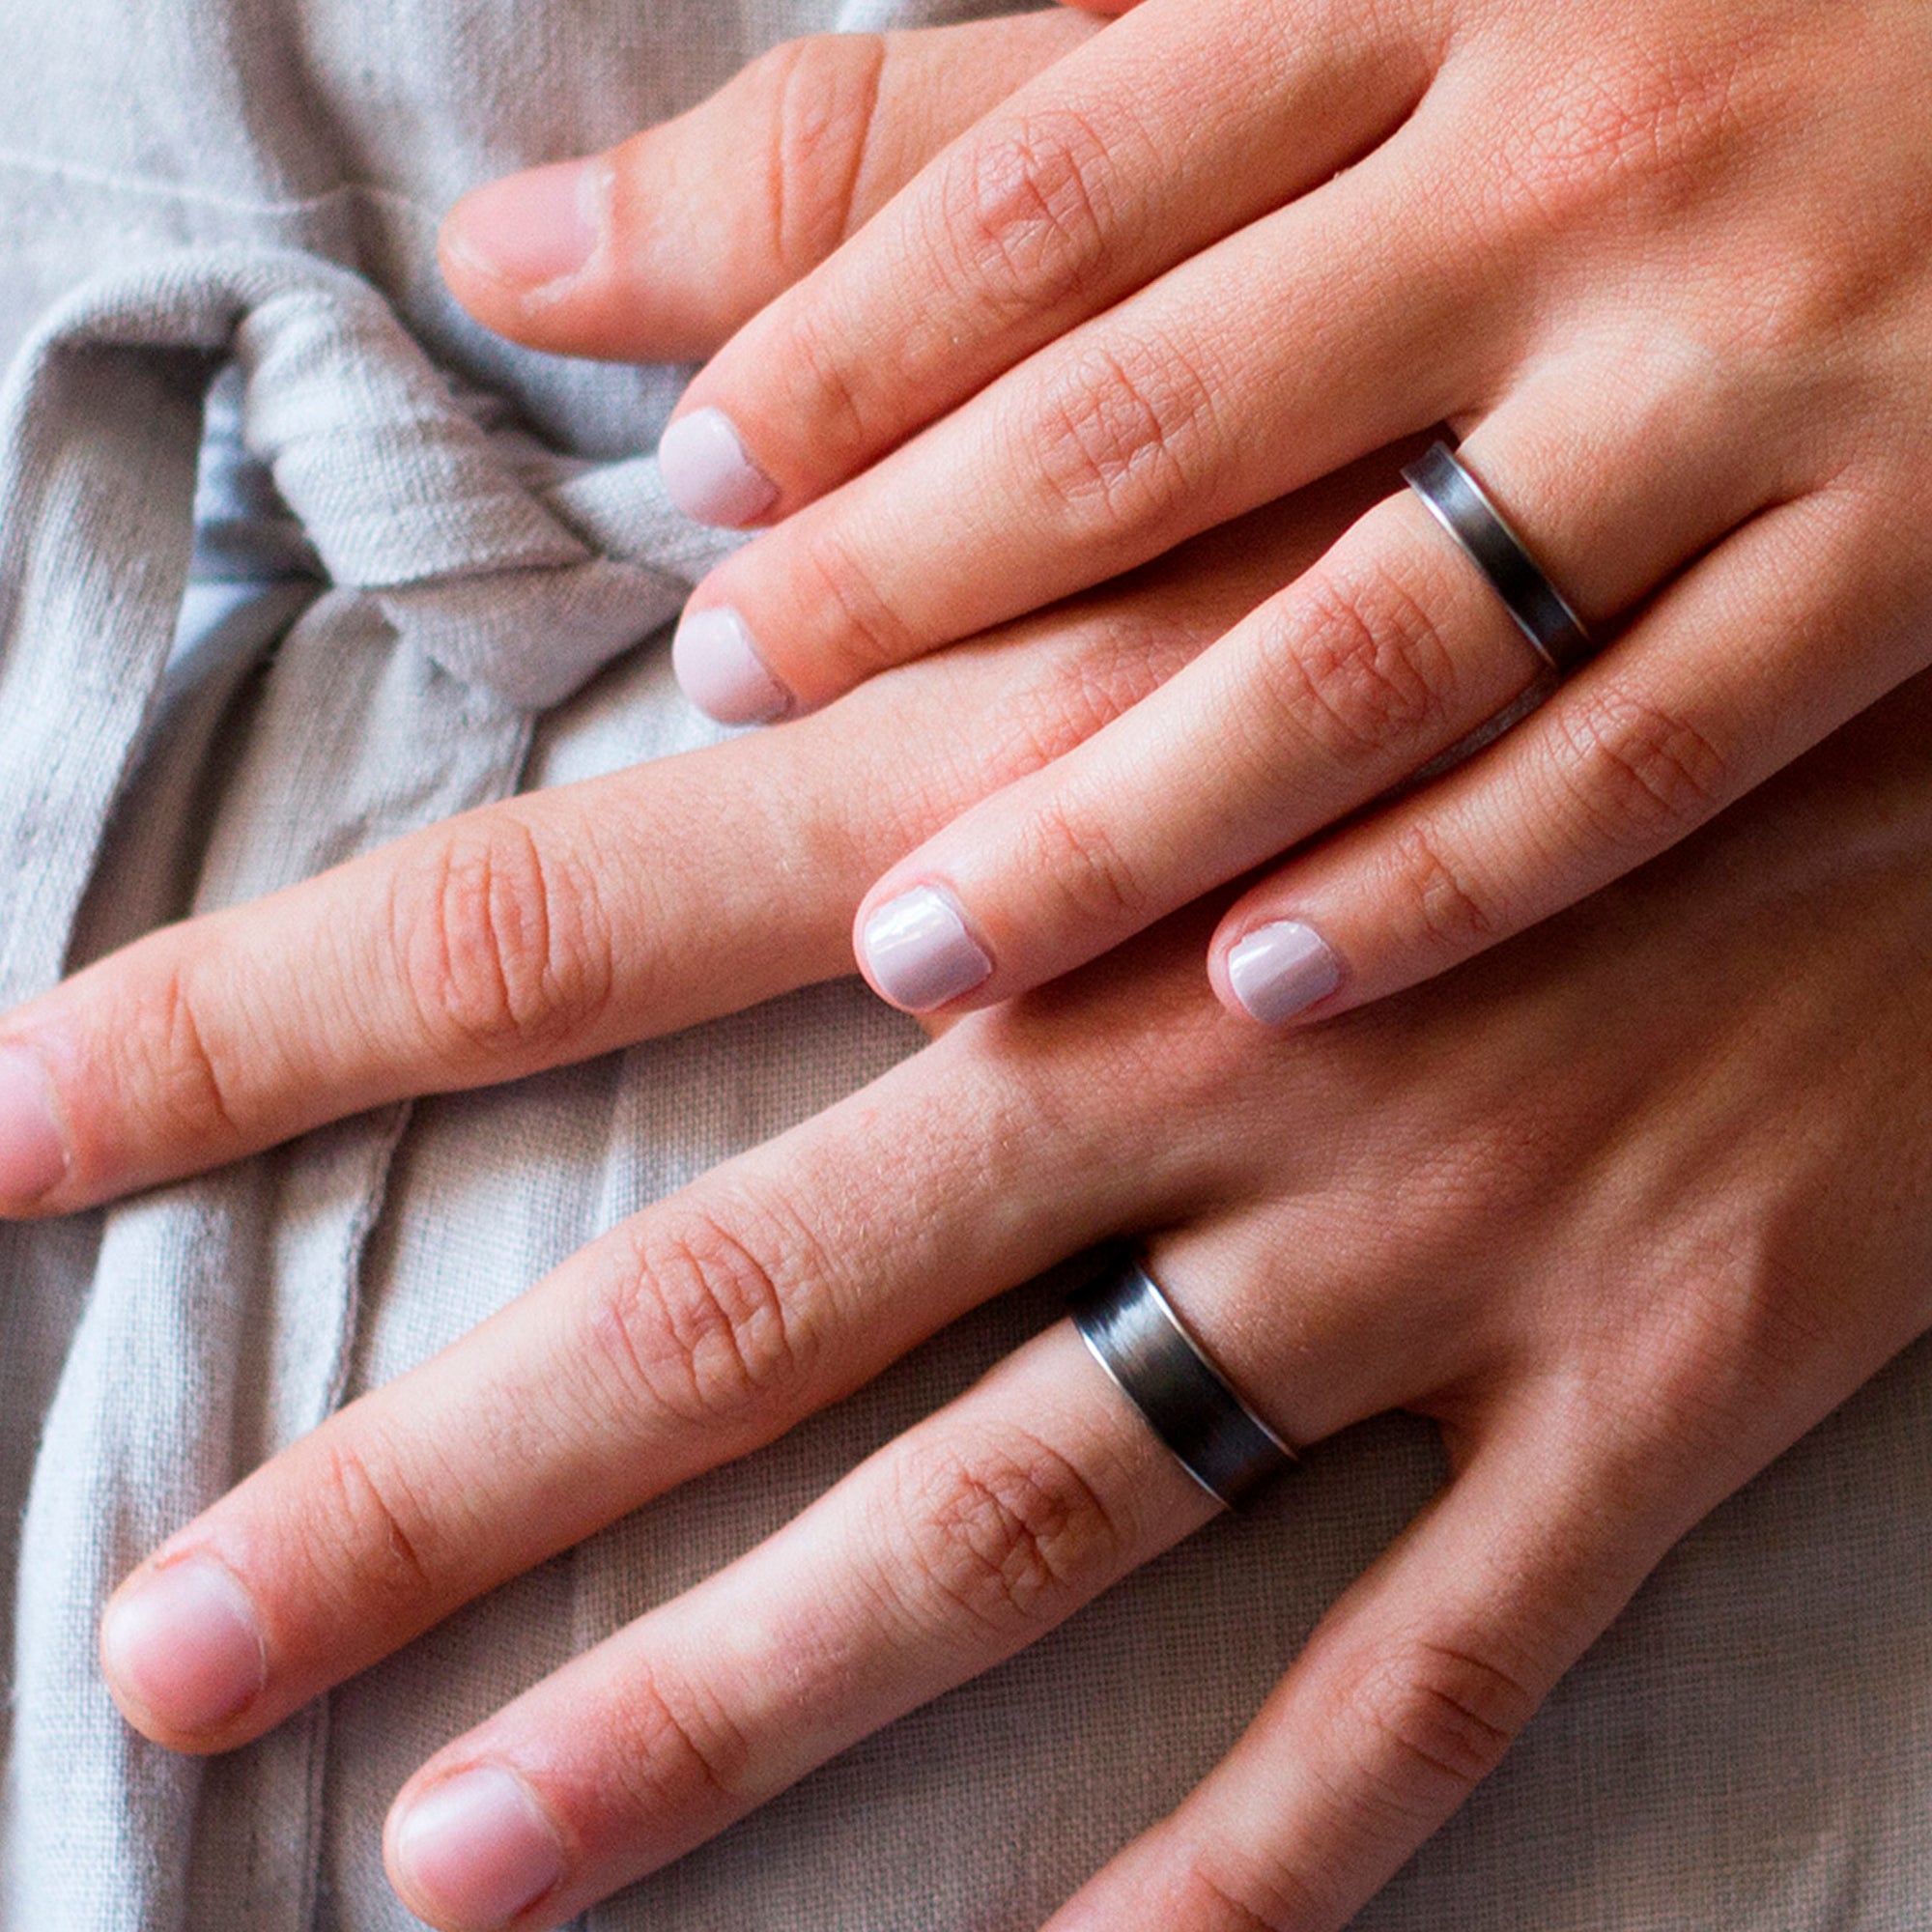 Carbon fiber and titanium Concave Women Ring